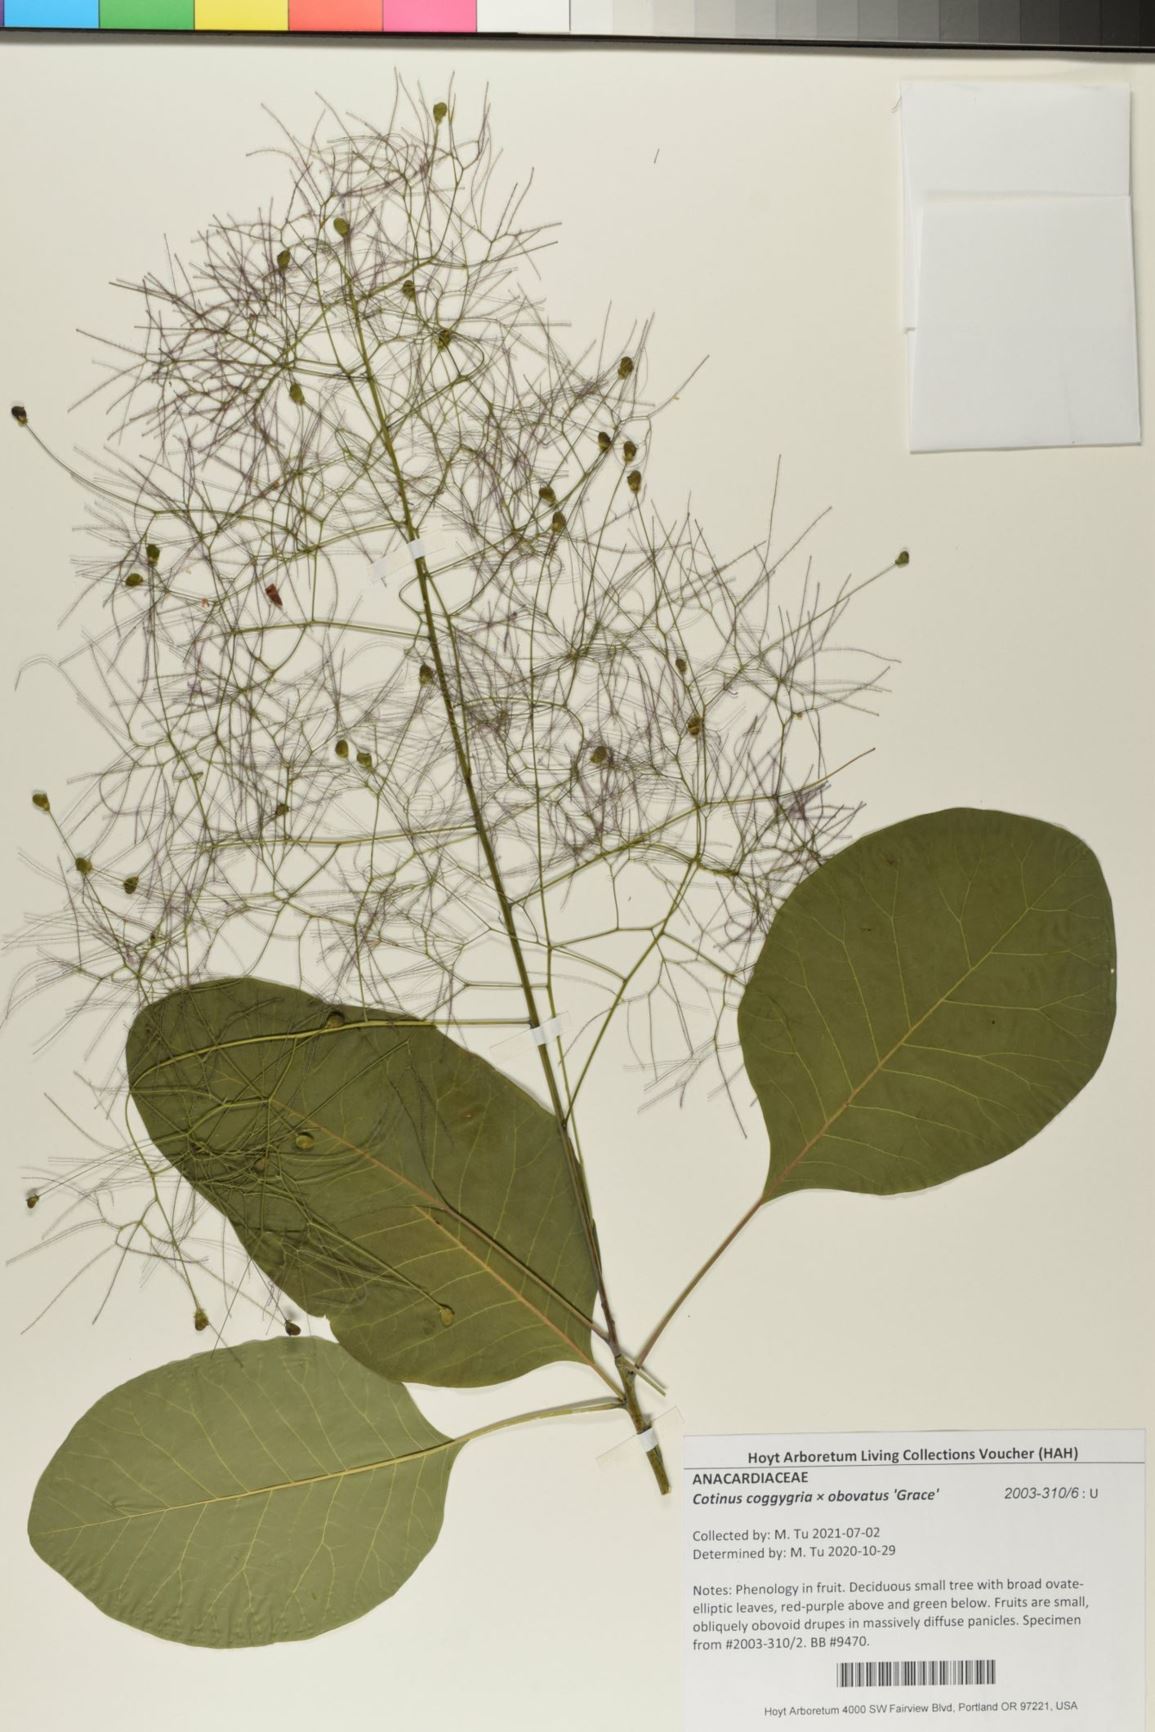 Cotinus coggygria × obovatus 'Grace' - smoketree